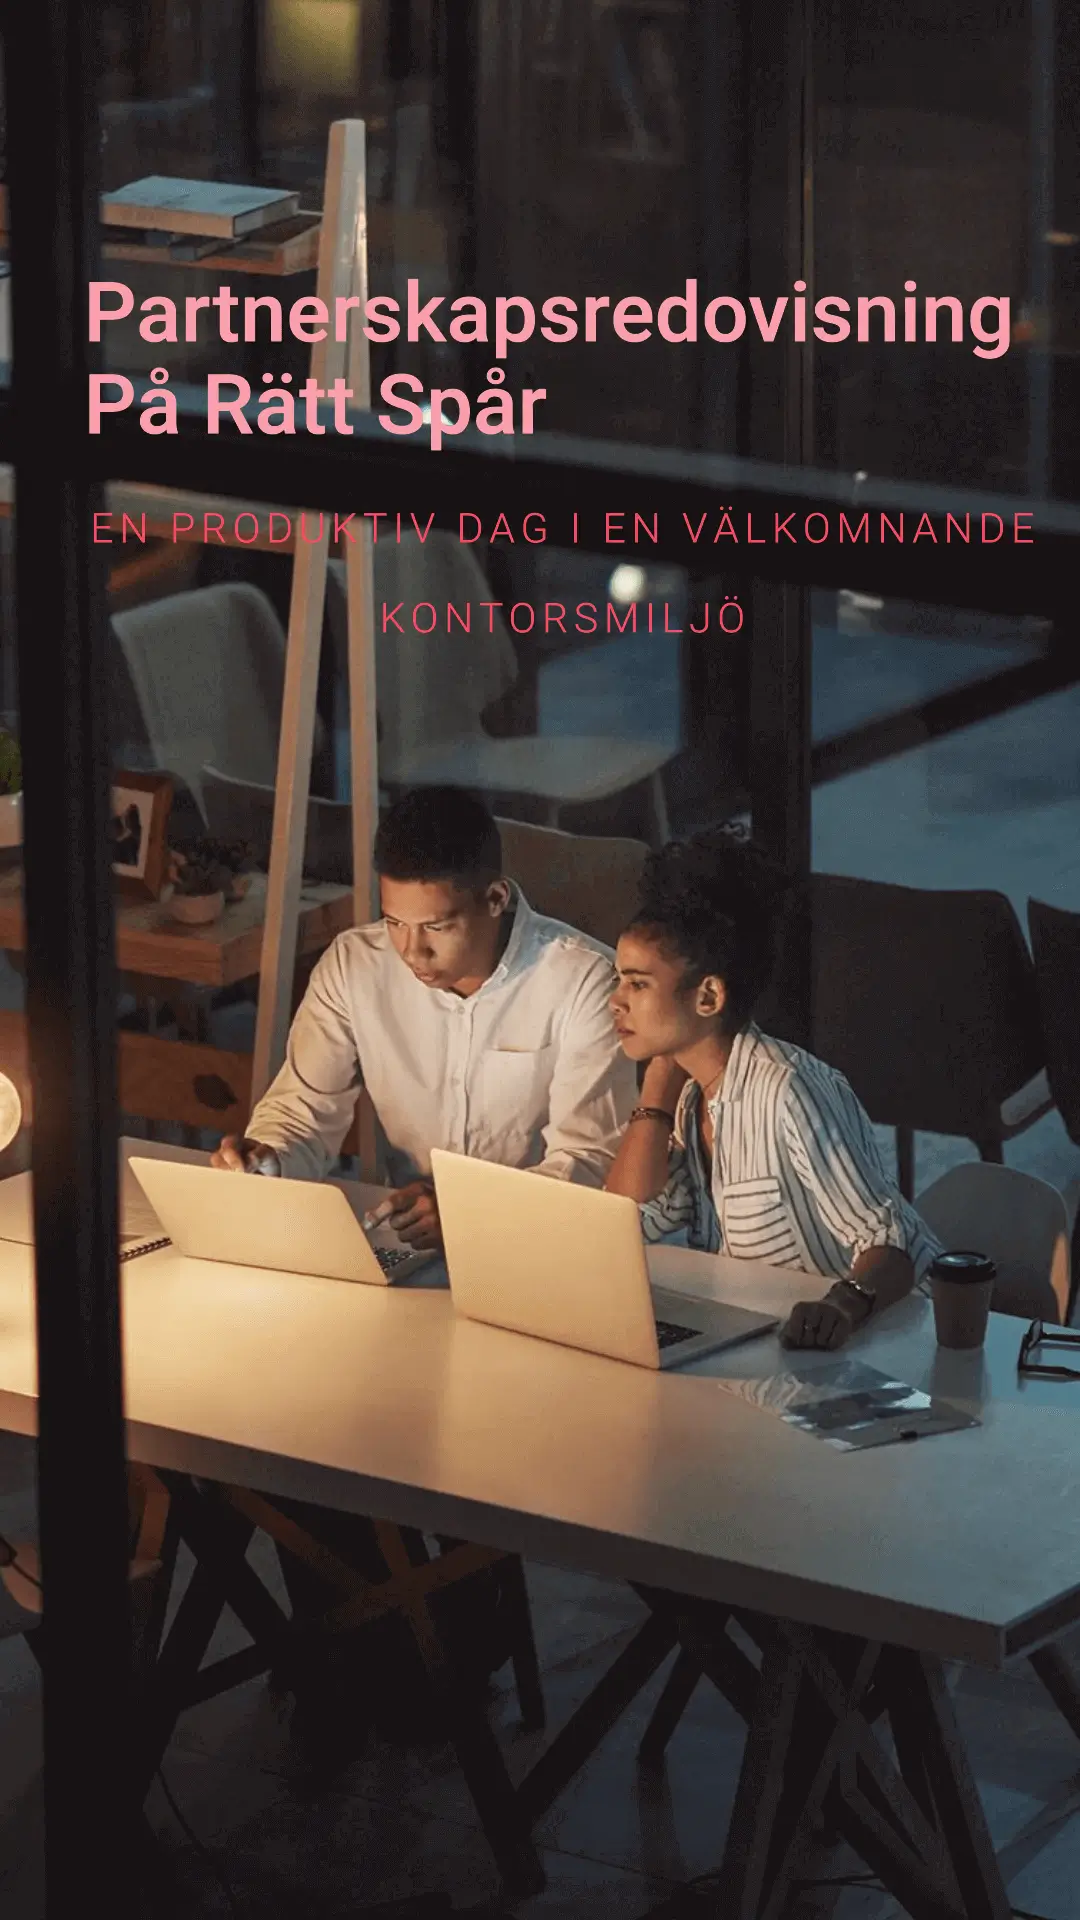 Två partners arbetar tillsammans vid en bärbar dator i en kontorsmiljö på kvällen, med text på svenska som framhäver partnerskapsredovisning på rätt spår.